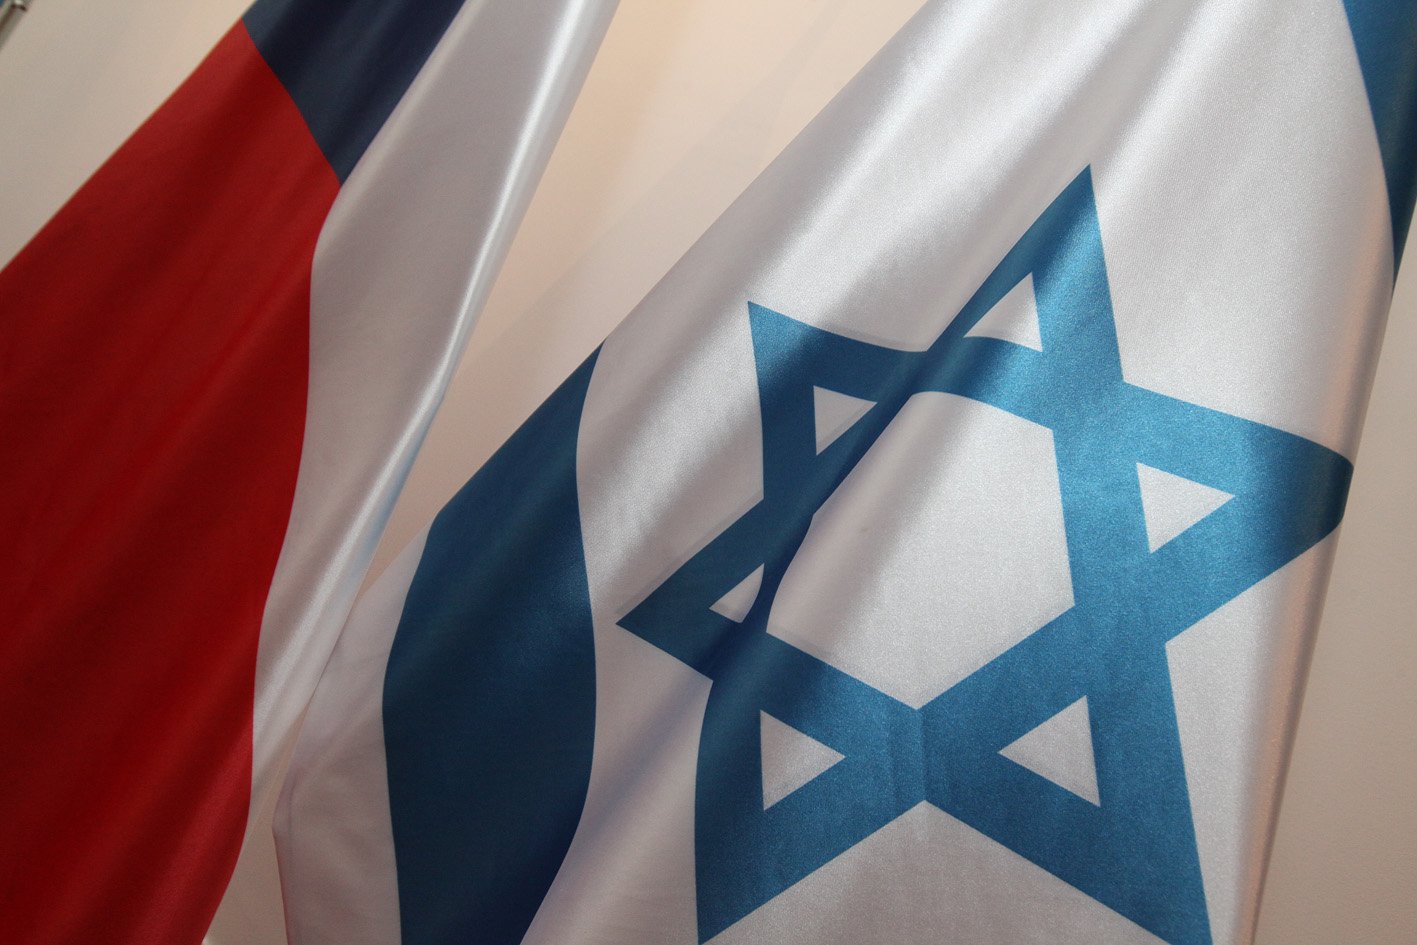 Meziparlamentní skupina přátel Česká republika - Izrael odsuzuje raketové útoky na izraelské území a civilní obyvatelstvo